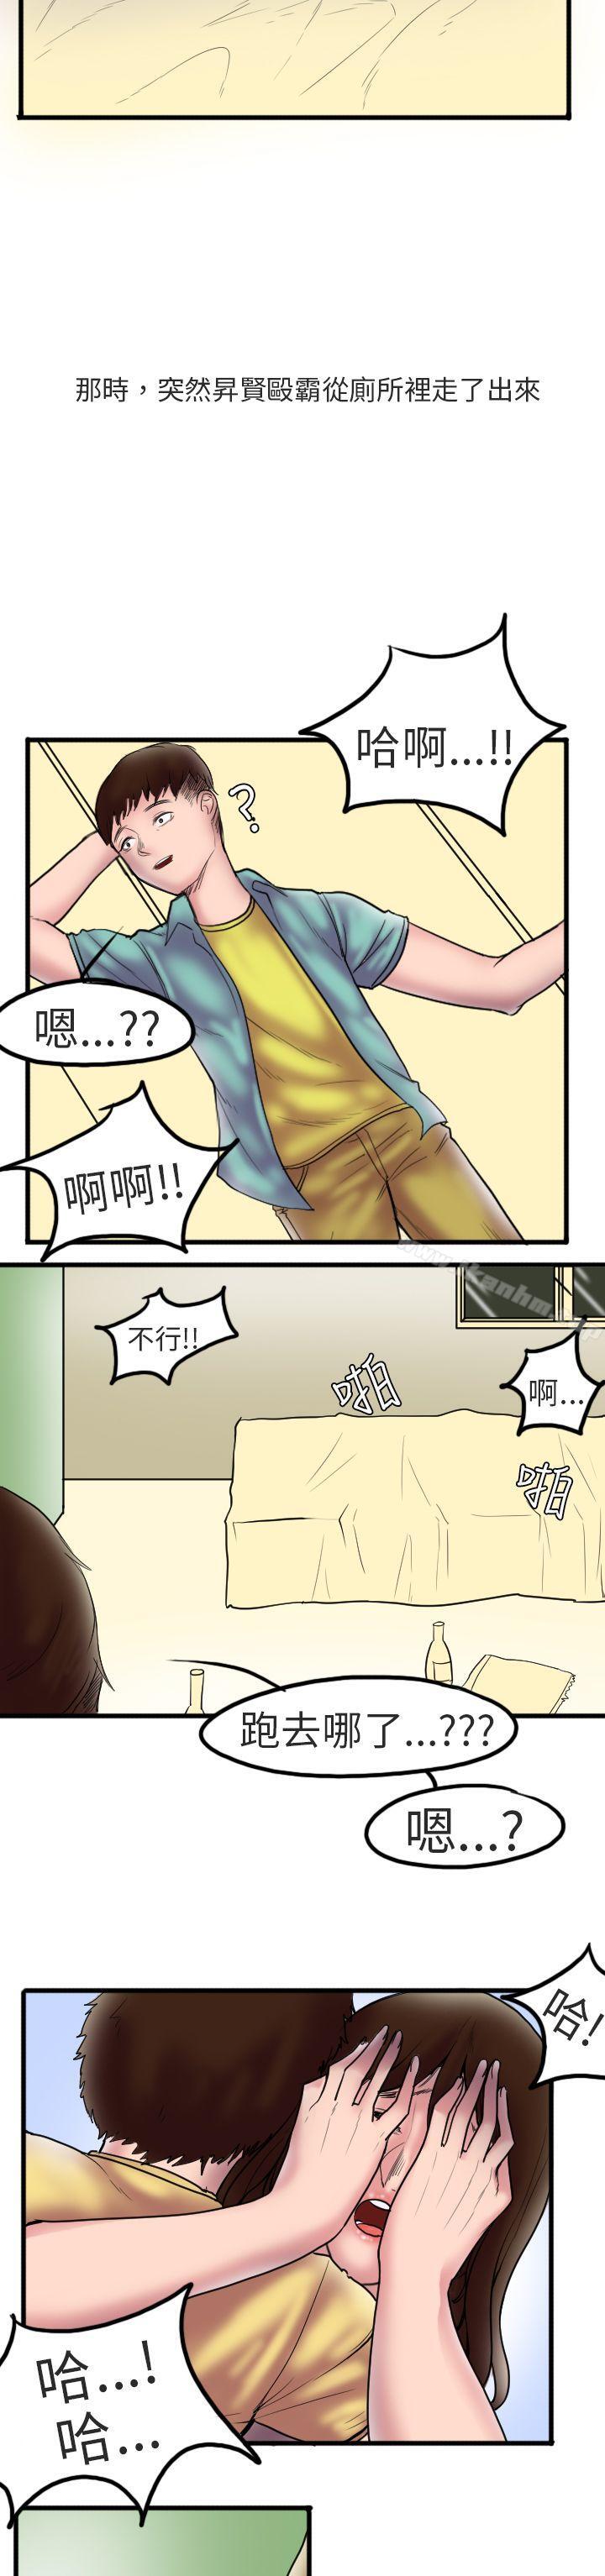 漫画韩国 秘密Story第二季   - 立即阅读 第二季 床與墻壁之間(上)第15漫画图片